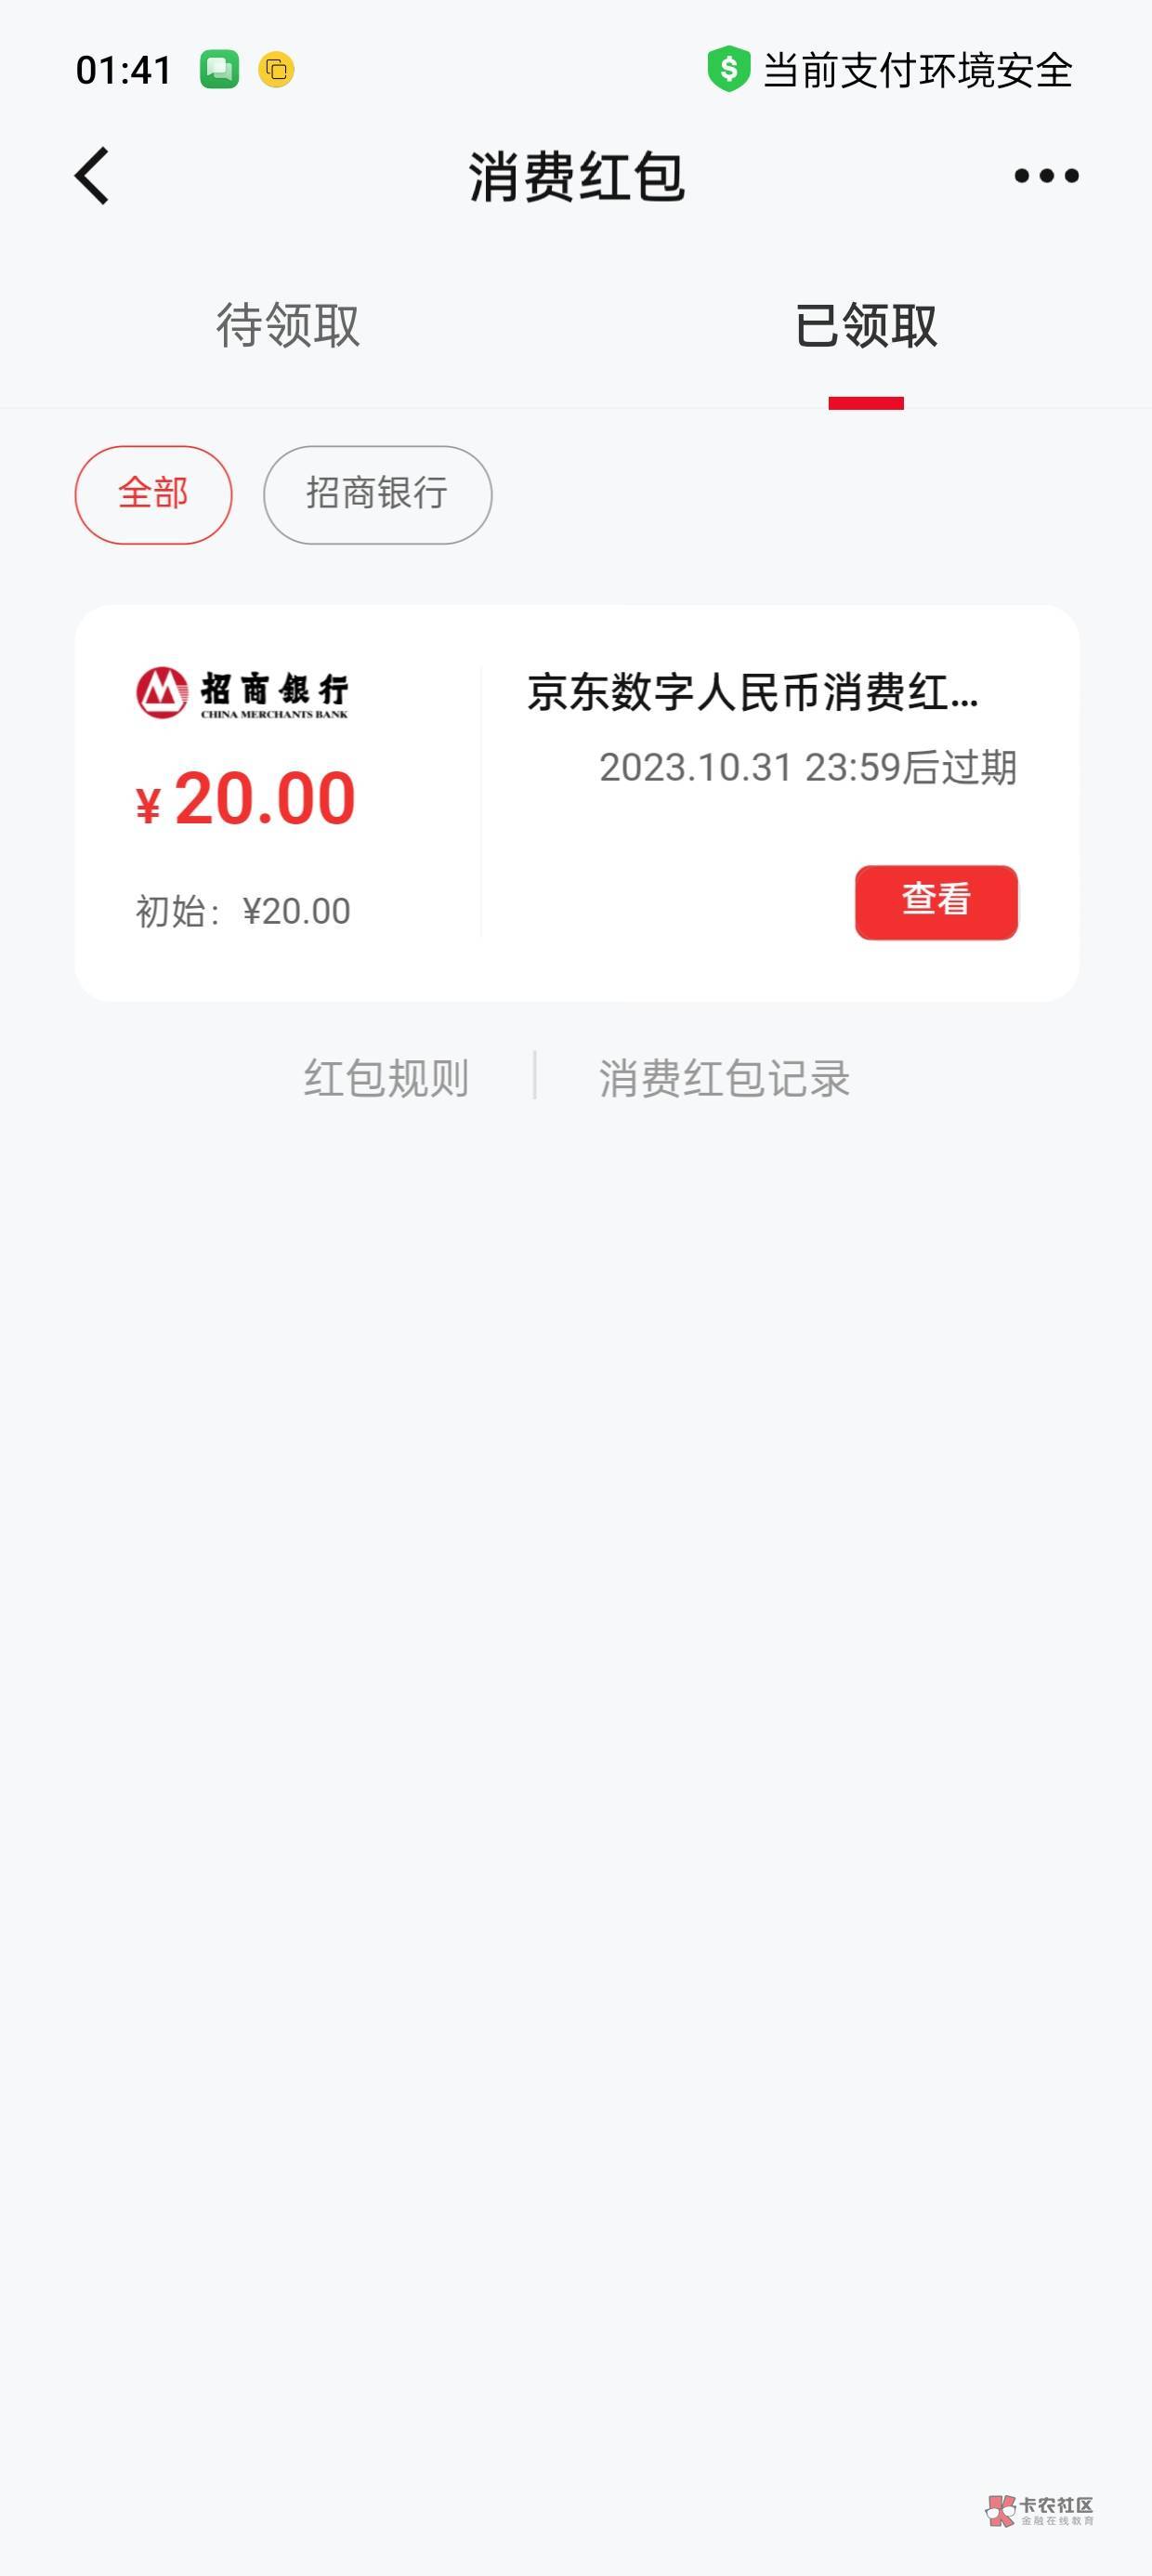 新号码注册京东送了8块钱和20通用数币。数币我是定位到杭州。新号码。老号码京东白条23 / 作者:林伯不卖菠萝鱼 / 